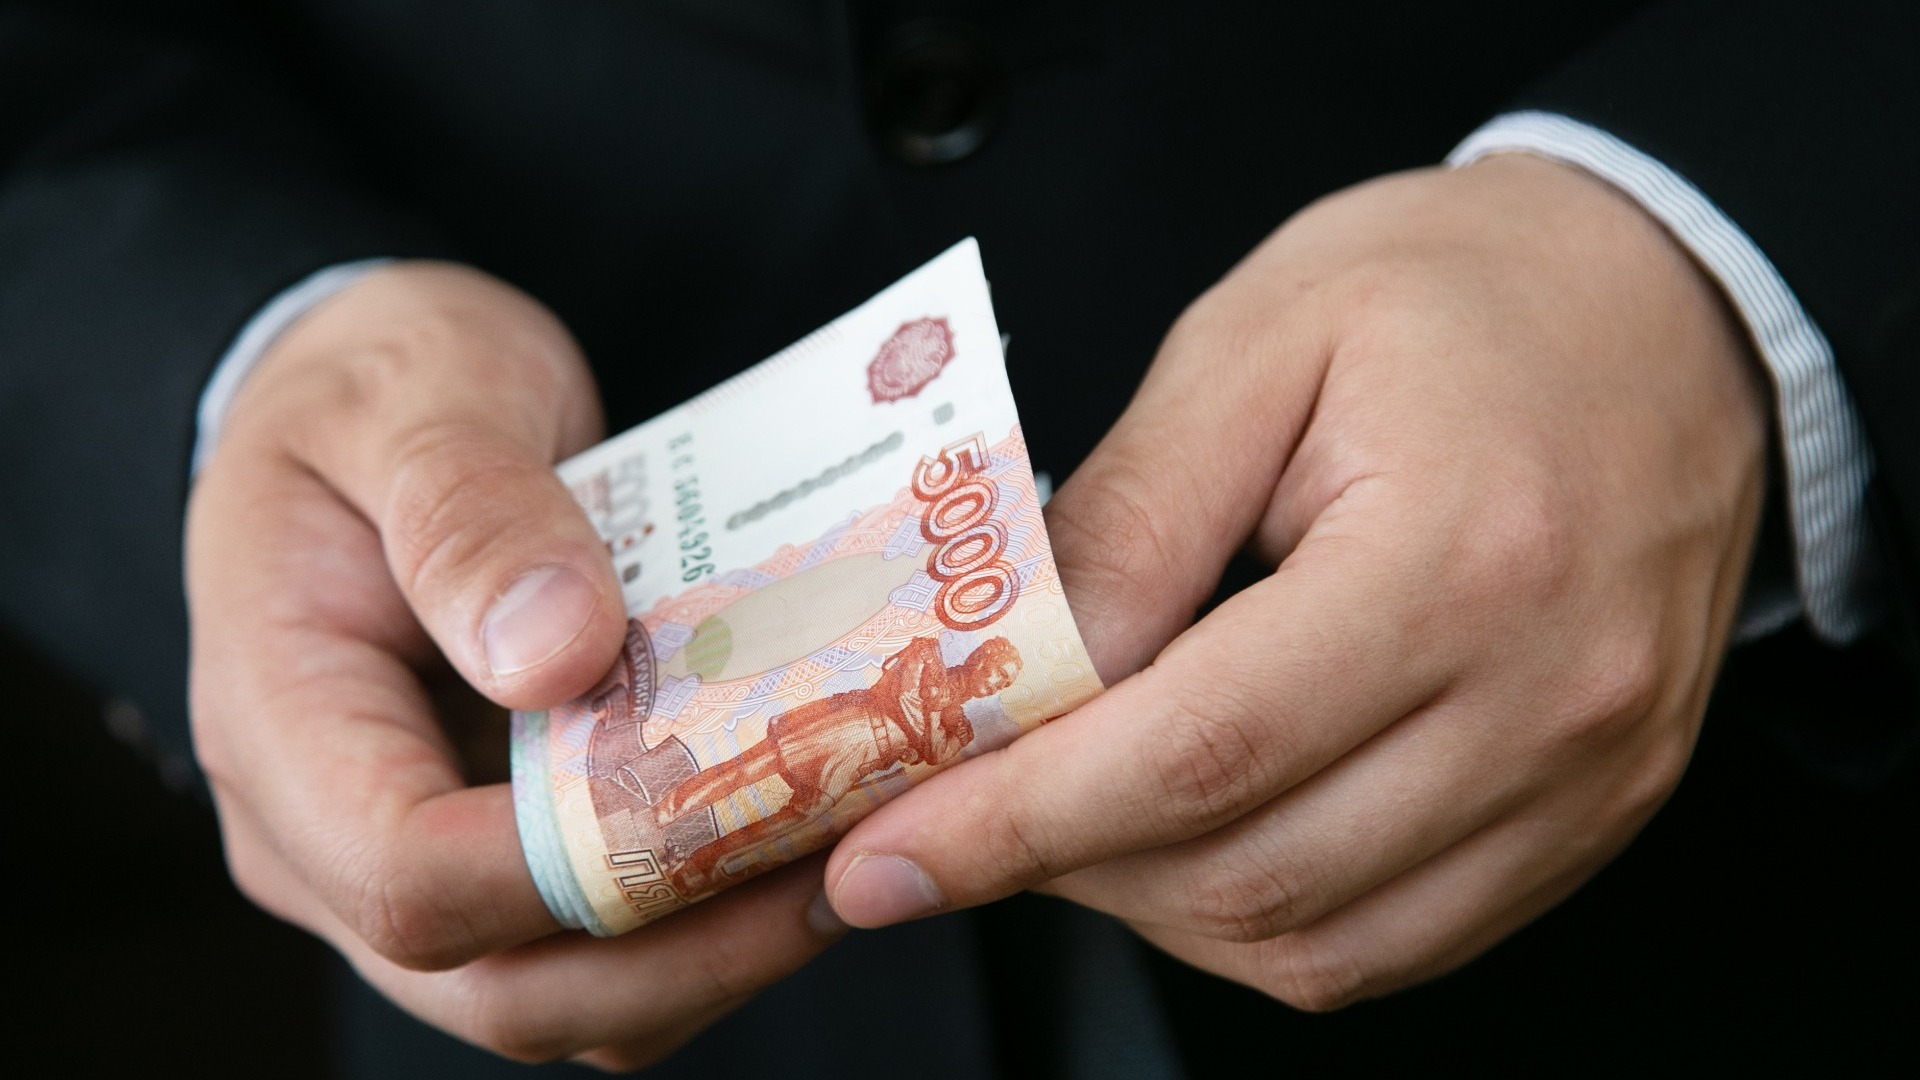 В Новосибирске чаще всего фальшивыми купюрами рассчитываются на АЗС и микрорынках.